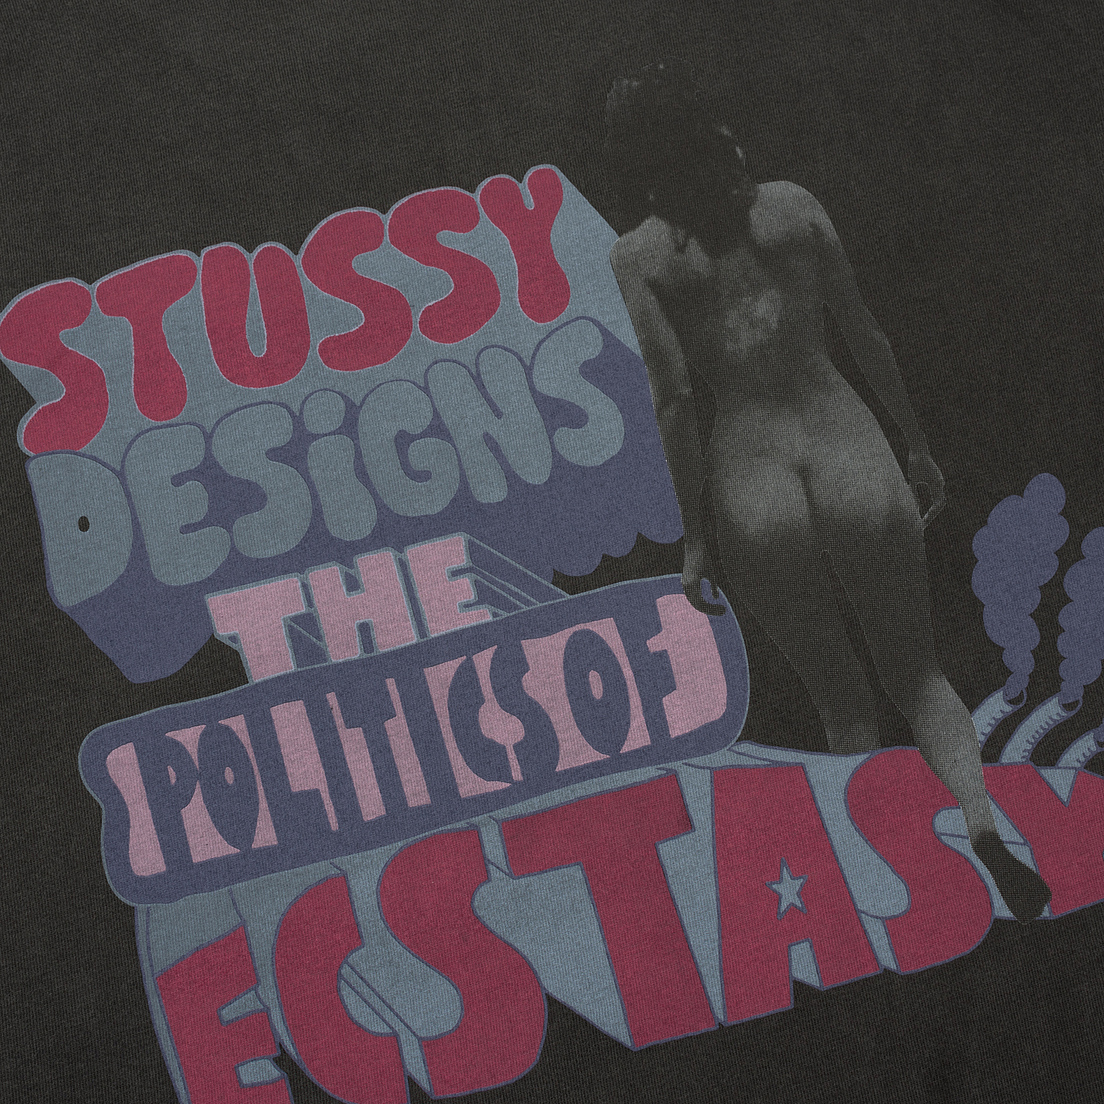 Stussy Мужская футболка Politics Of Ecstasy P. Dyed